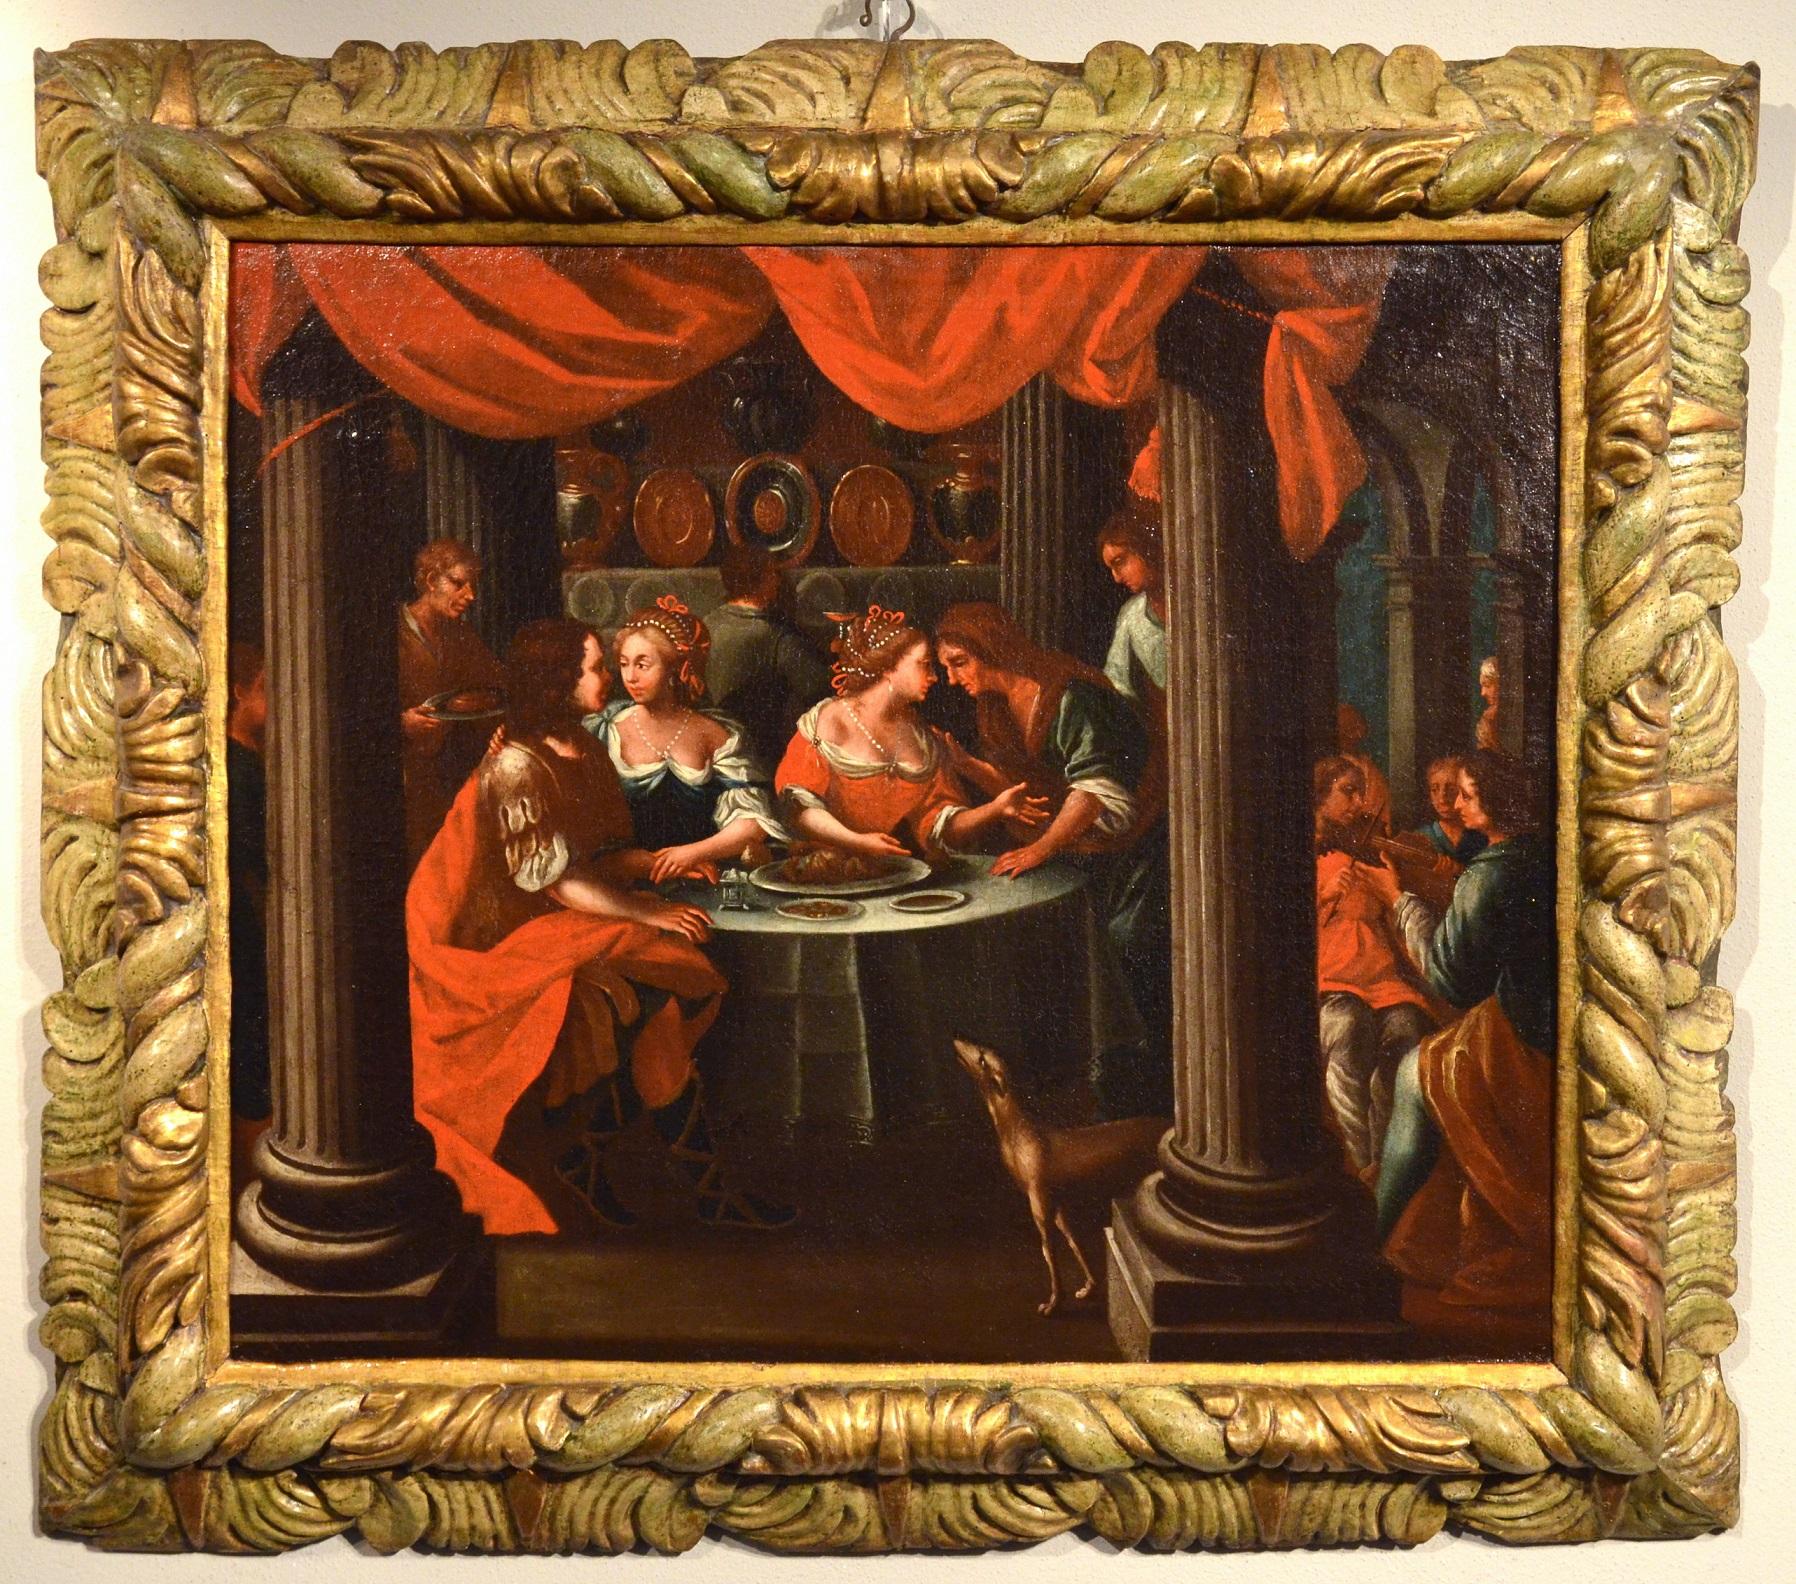 Bankett Flemish Italienische Malerei Öl auf Leinwand Altmeister 17. Jahrhundert Veronese Kunst – Painting von Unknown